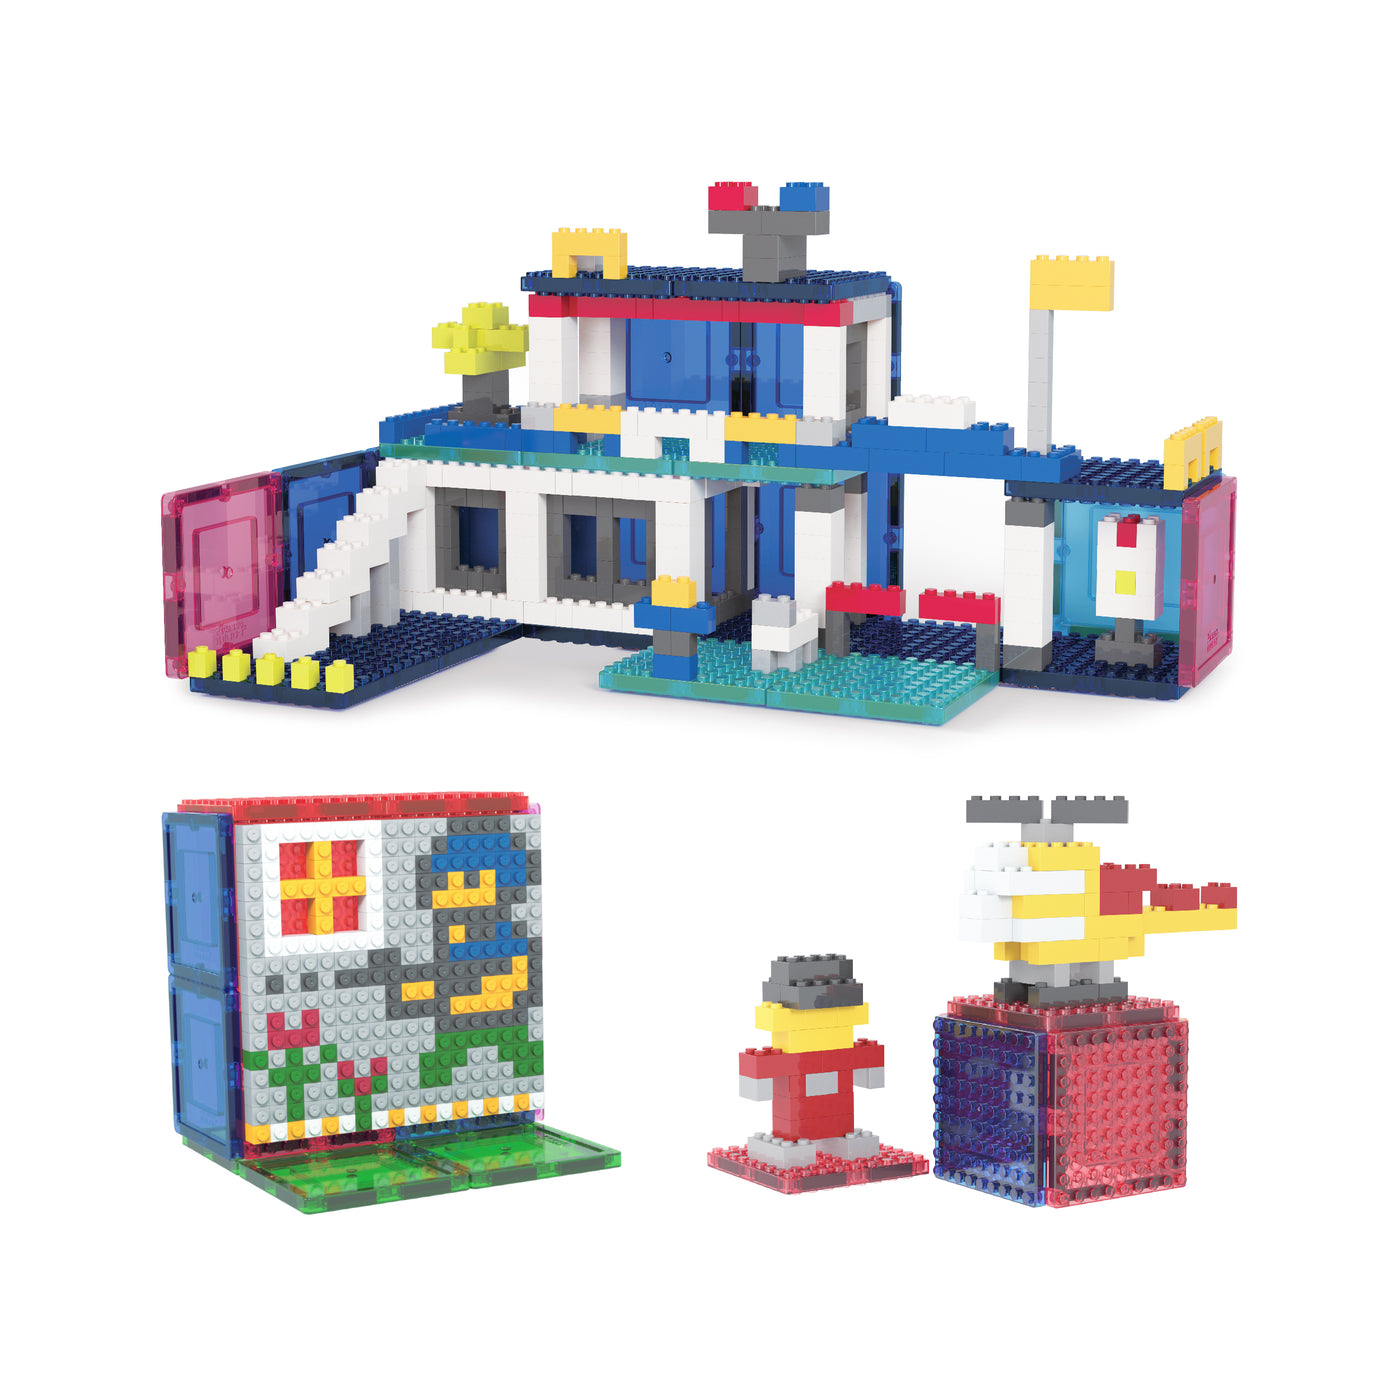 PicassoTiles 512 Piece Magnetic Brick Tile and Brick Building Set